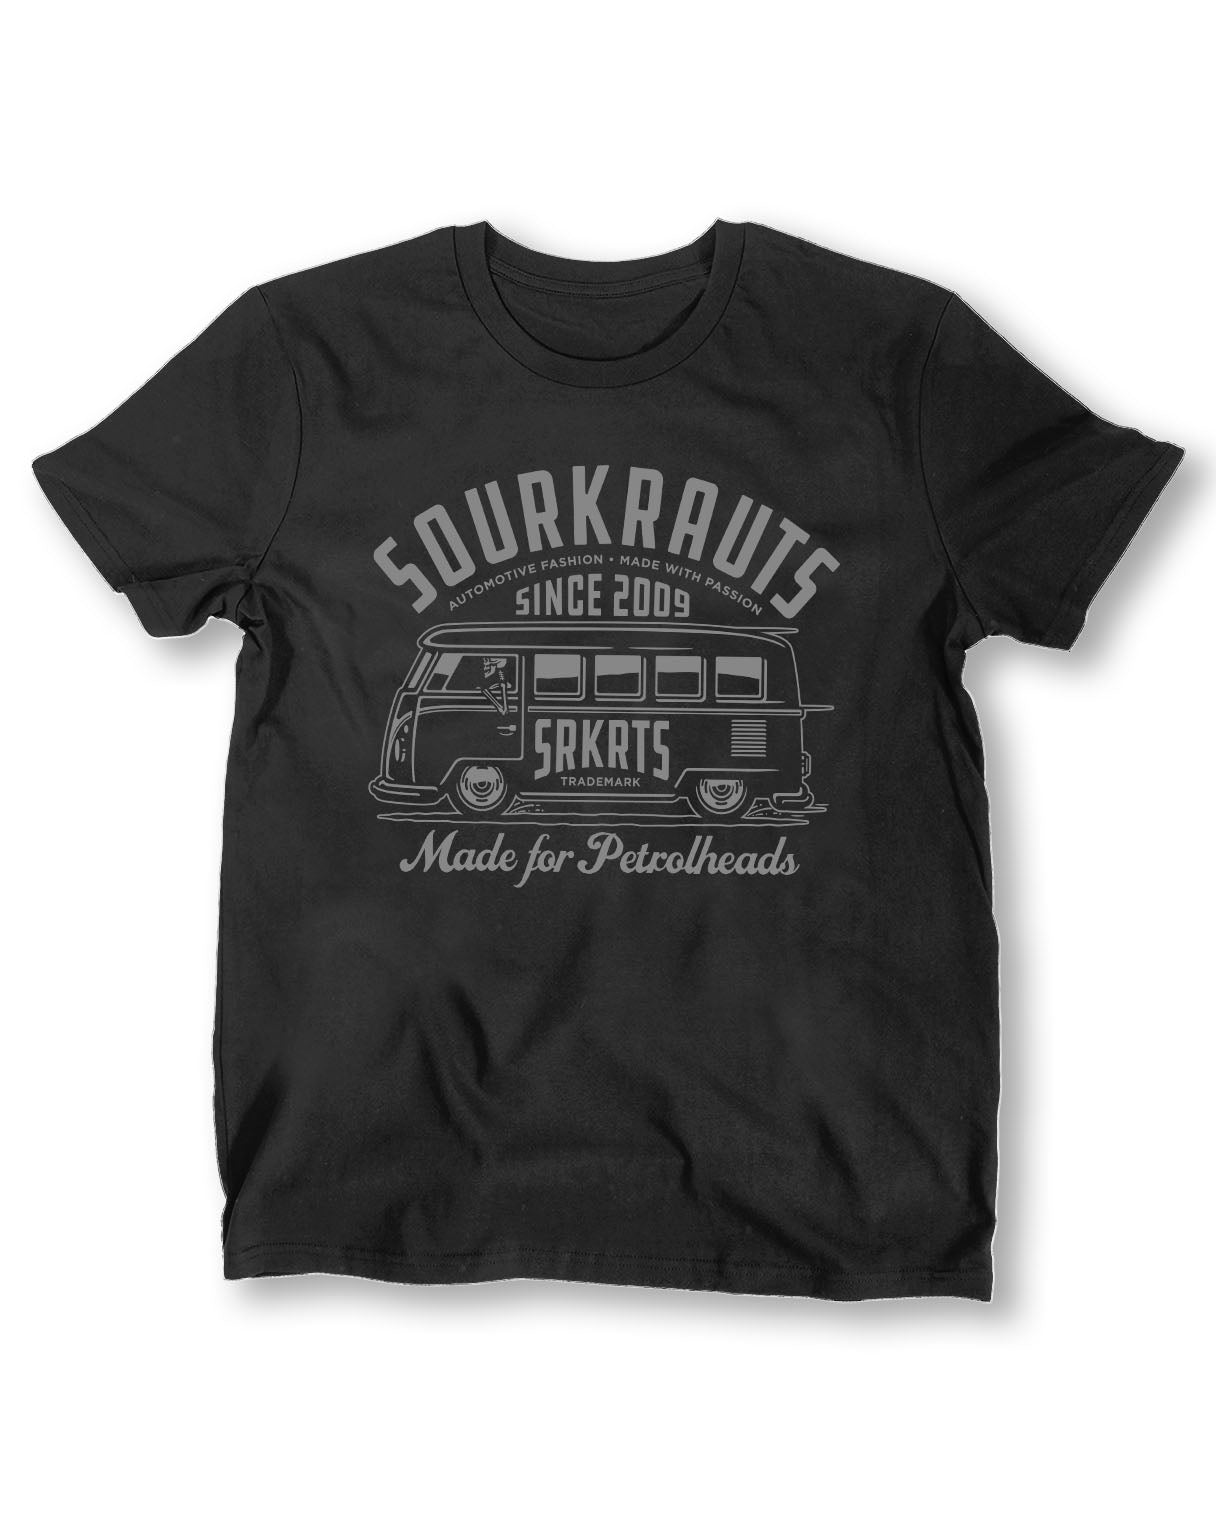 Juan I T-Shirt I 2017 - Sourkrauts Classics